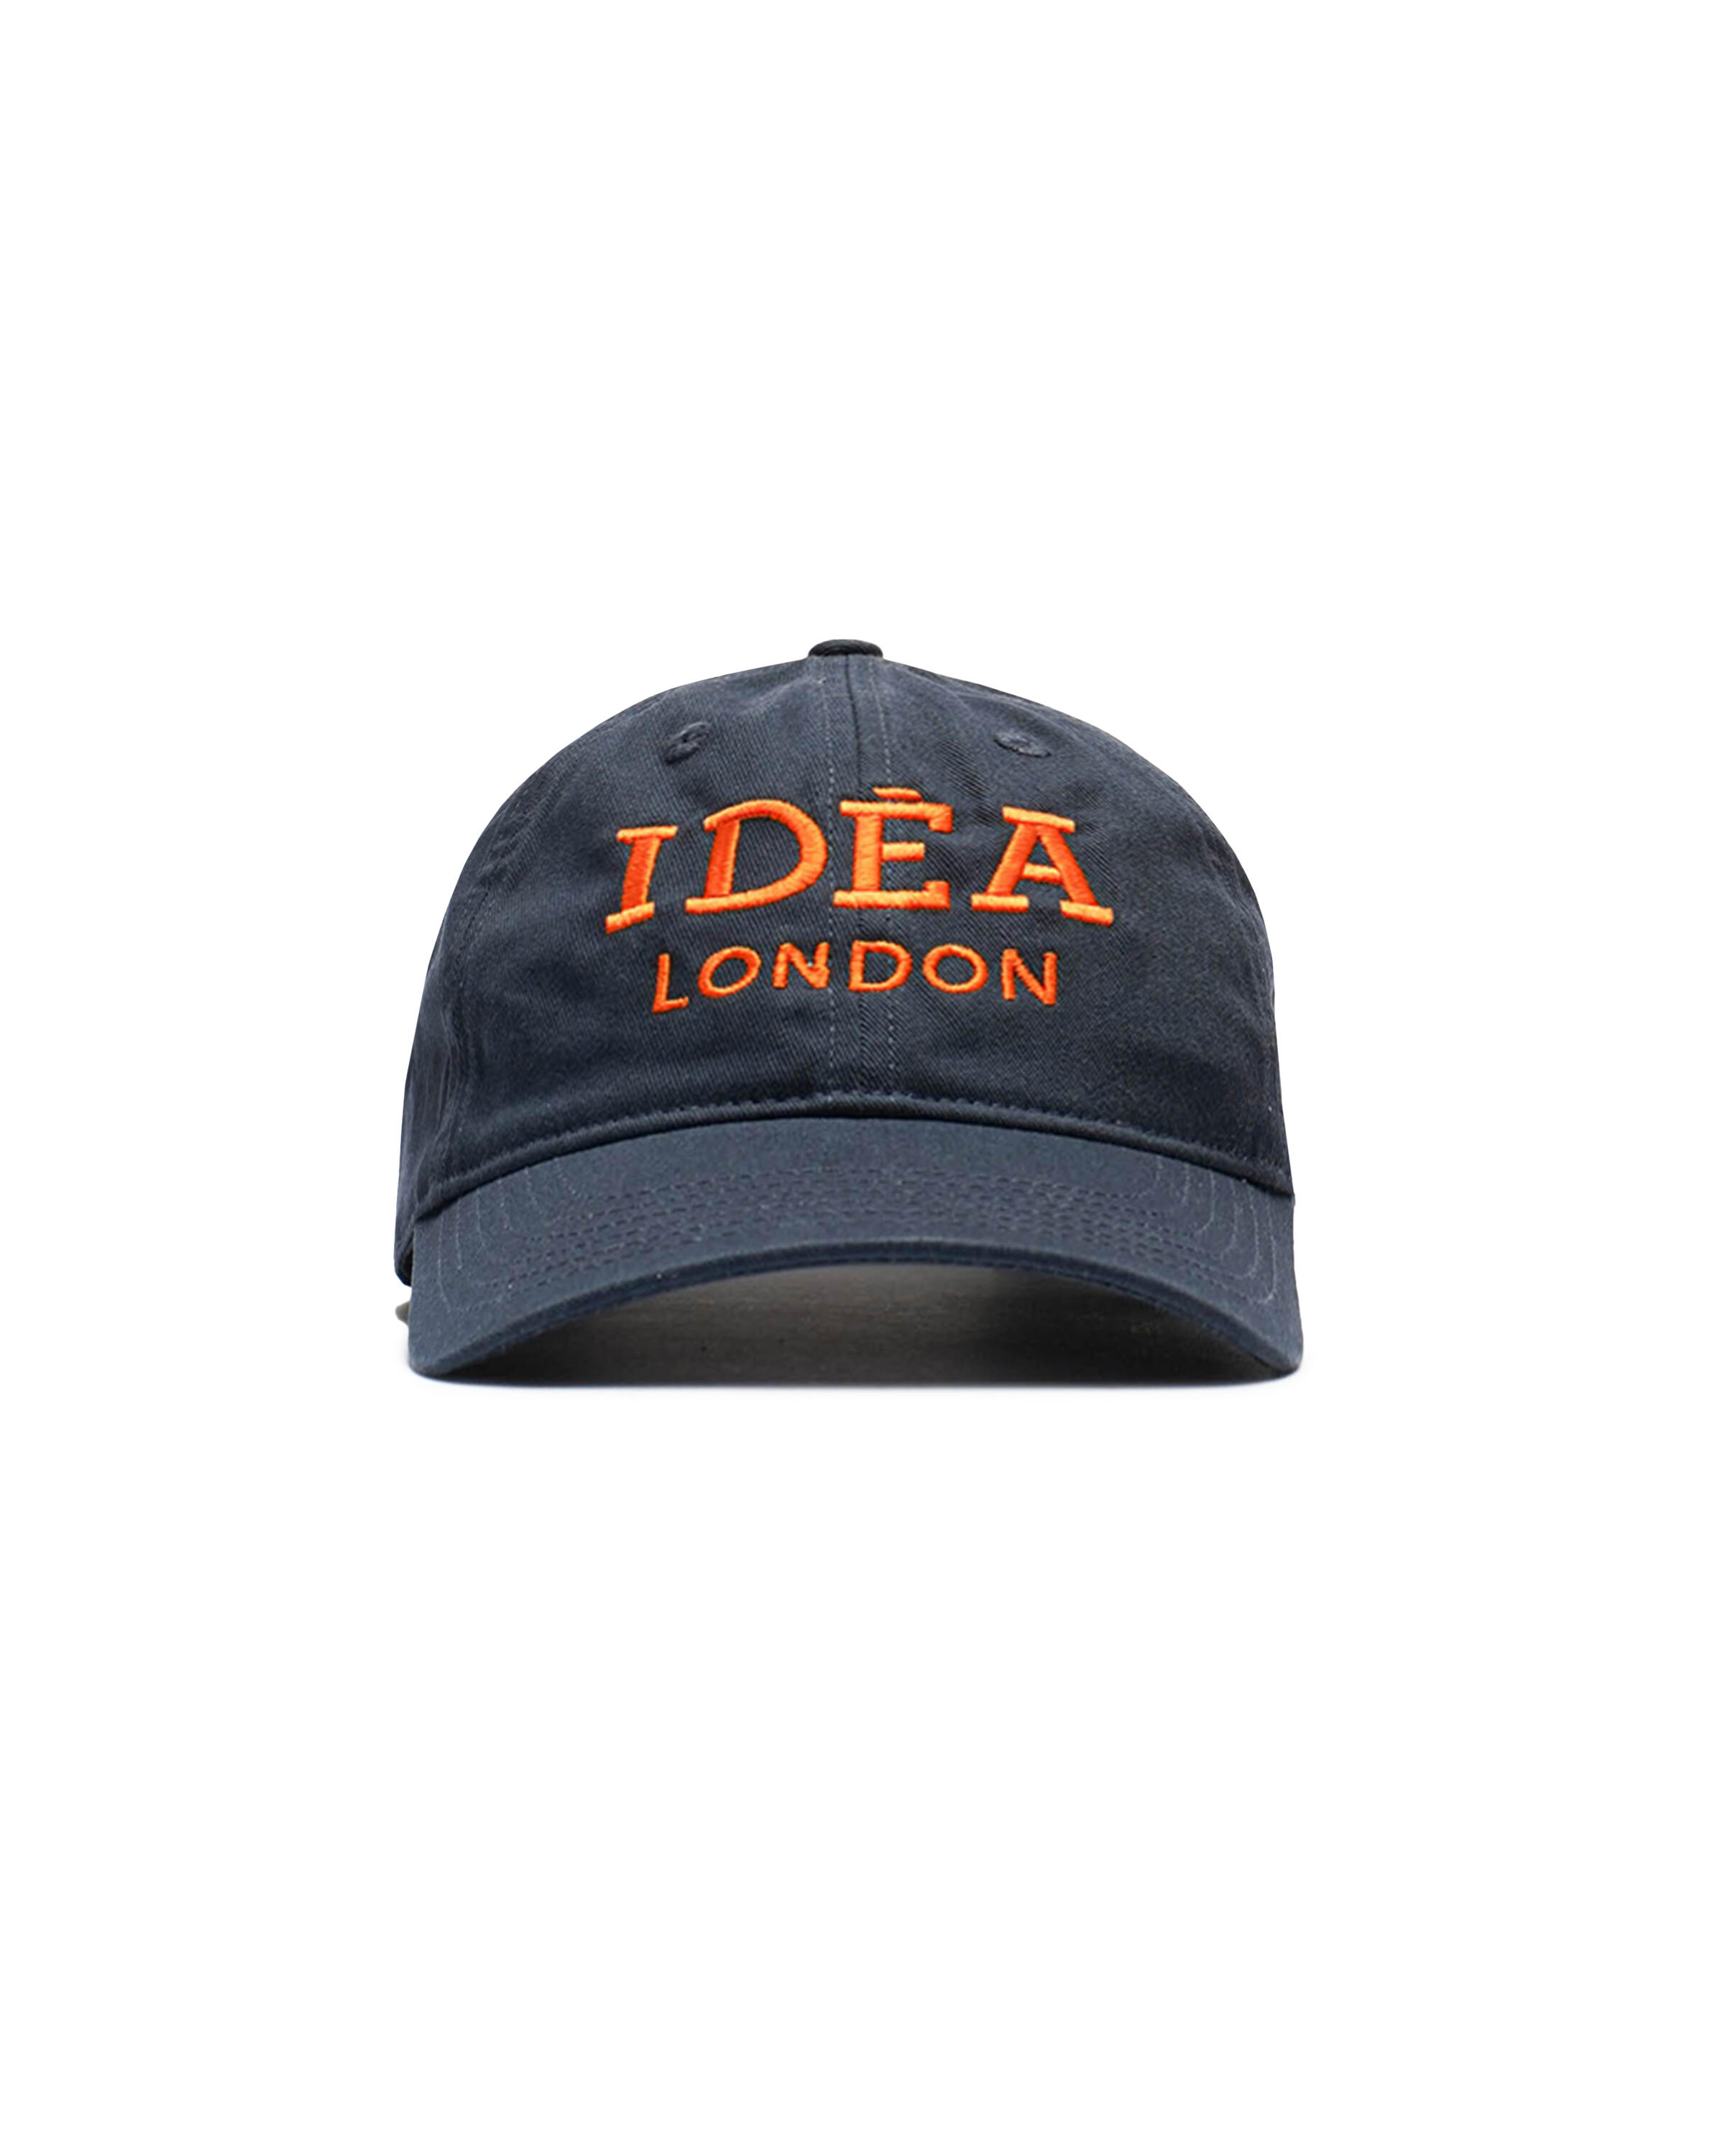 IDEA IDEA LONDON  HAT